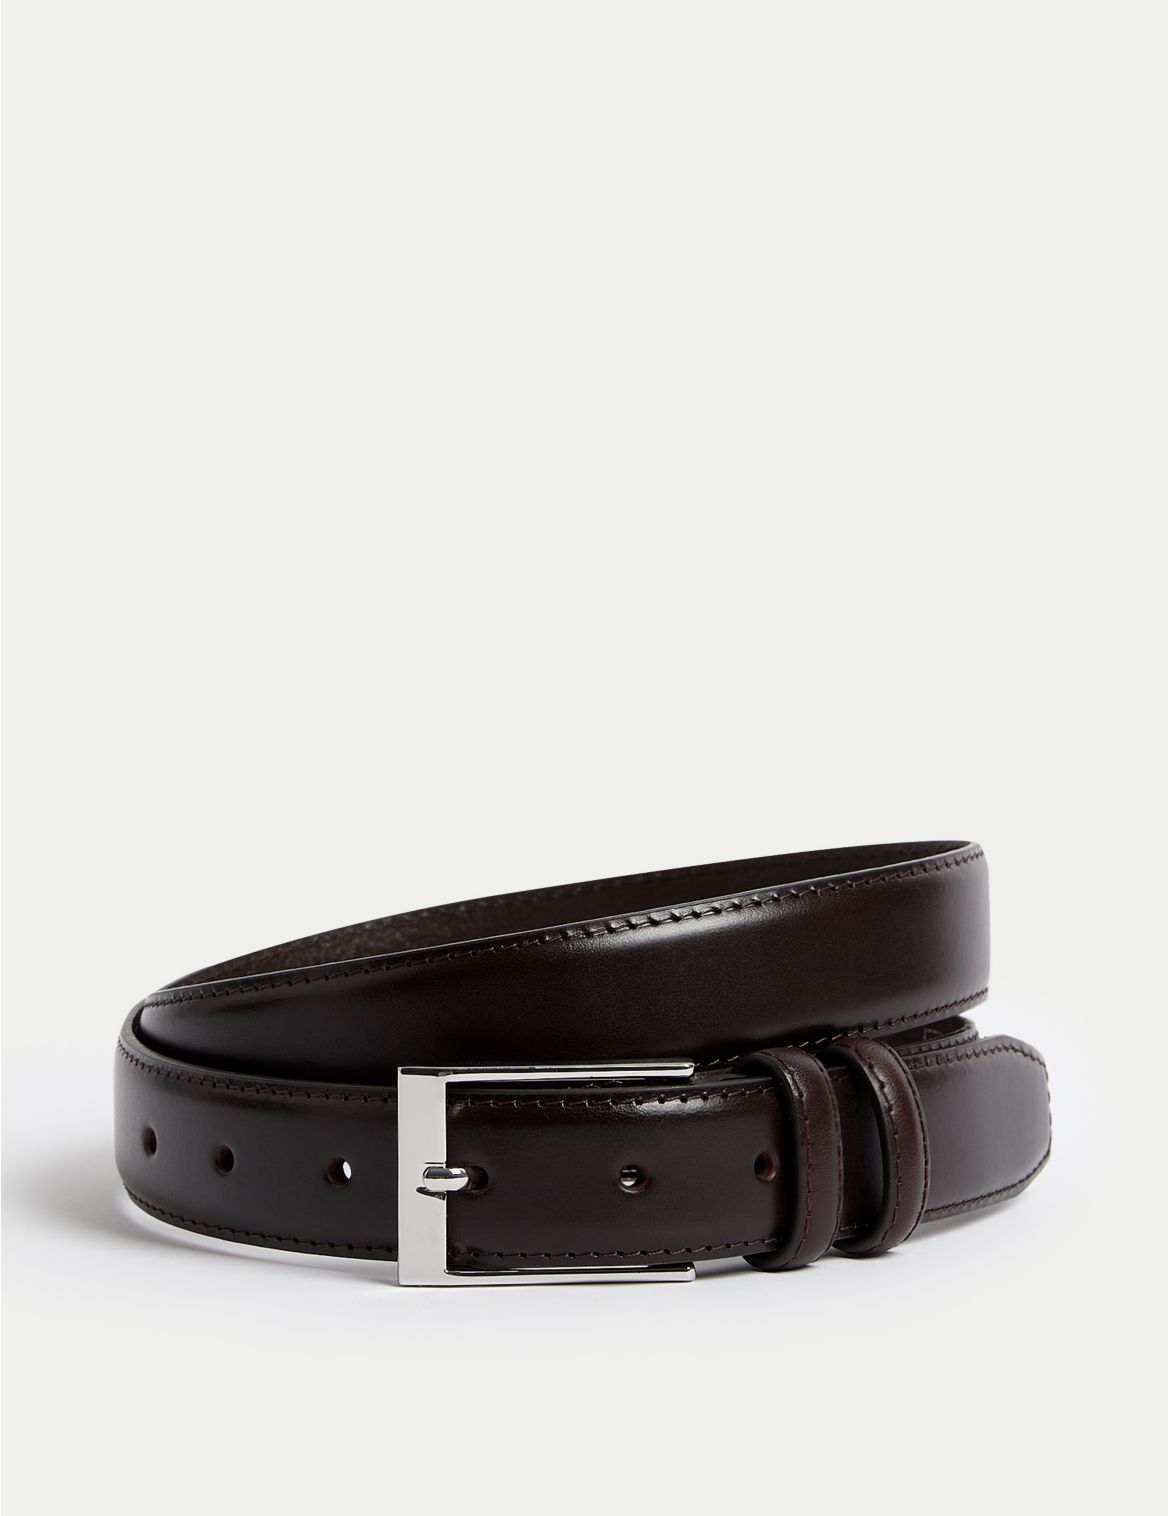 Leather Smart Belt brown